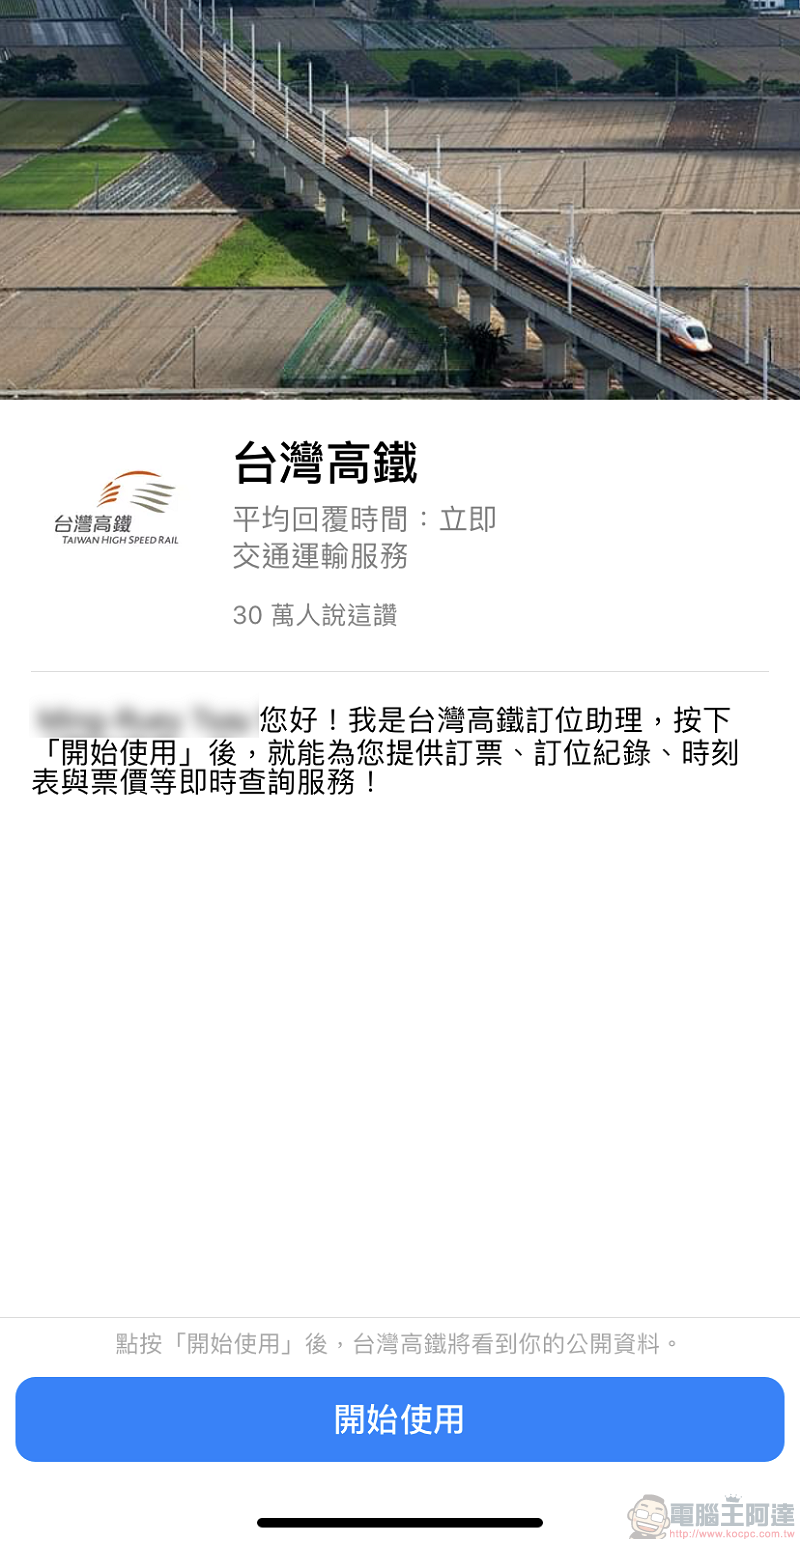 台灣高鐵推出 「 Messenger智慧購票 」 透過Messenger快速協助訂票